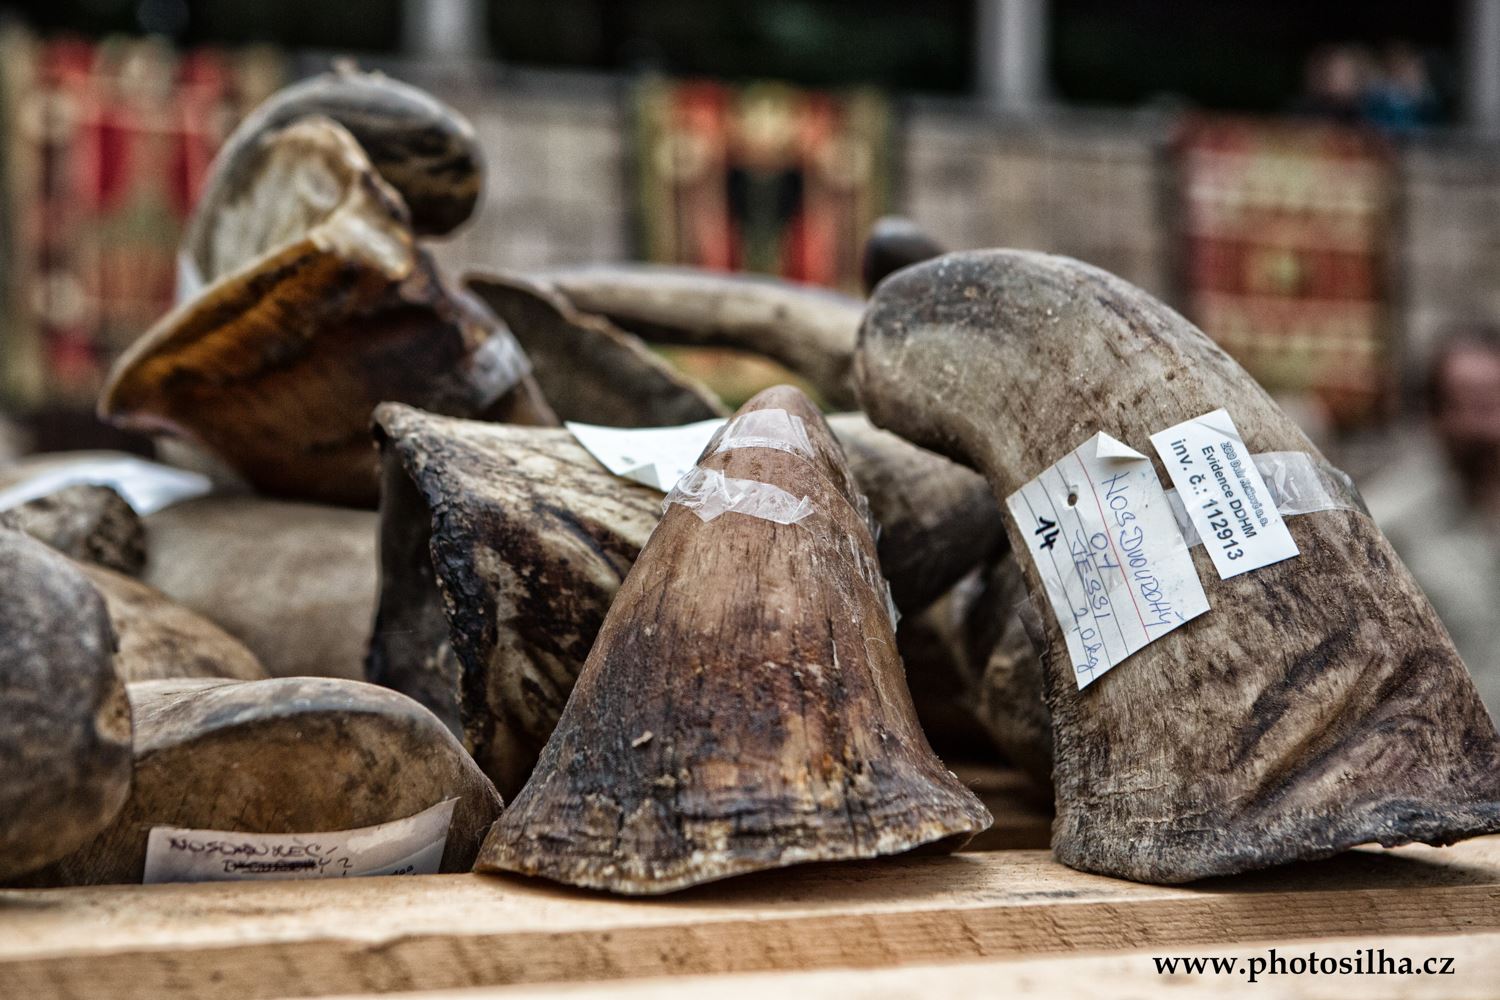 Hơn 50 kg sừng tê giác bị tiêu hủy